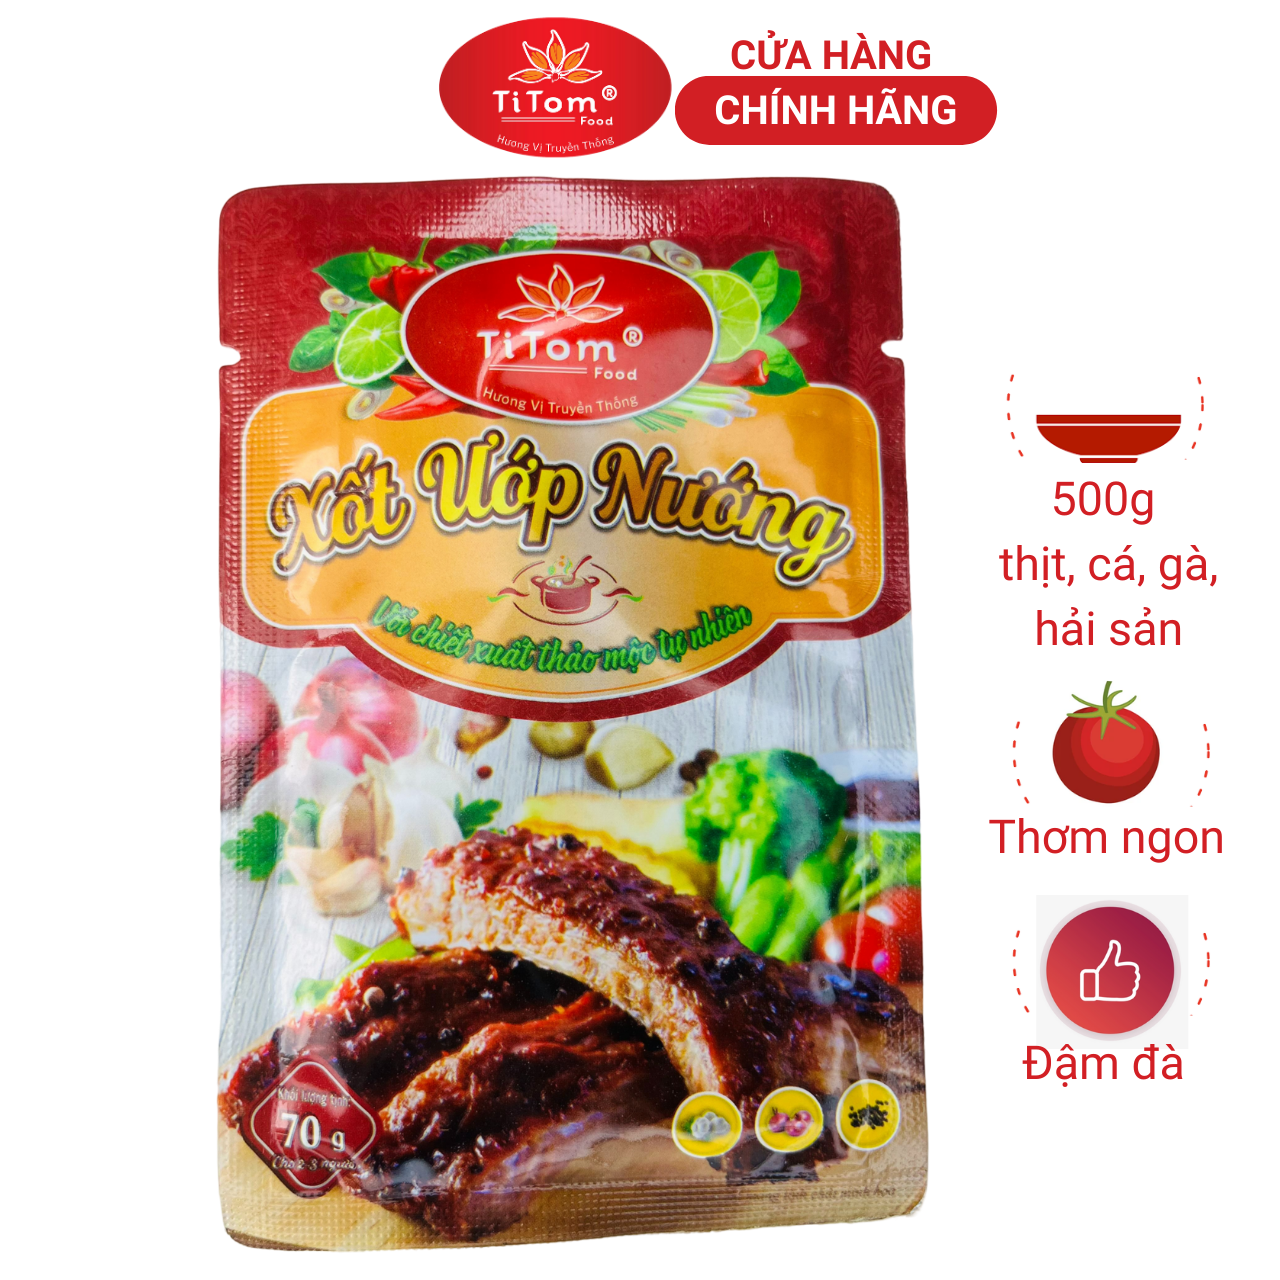 Xốt ướp nướng Titom gói 70g gia vị hoàn chỉnh dùng ướp nướng thịt cá hải sản